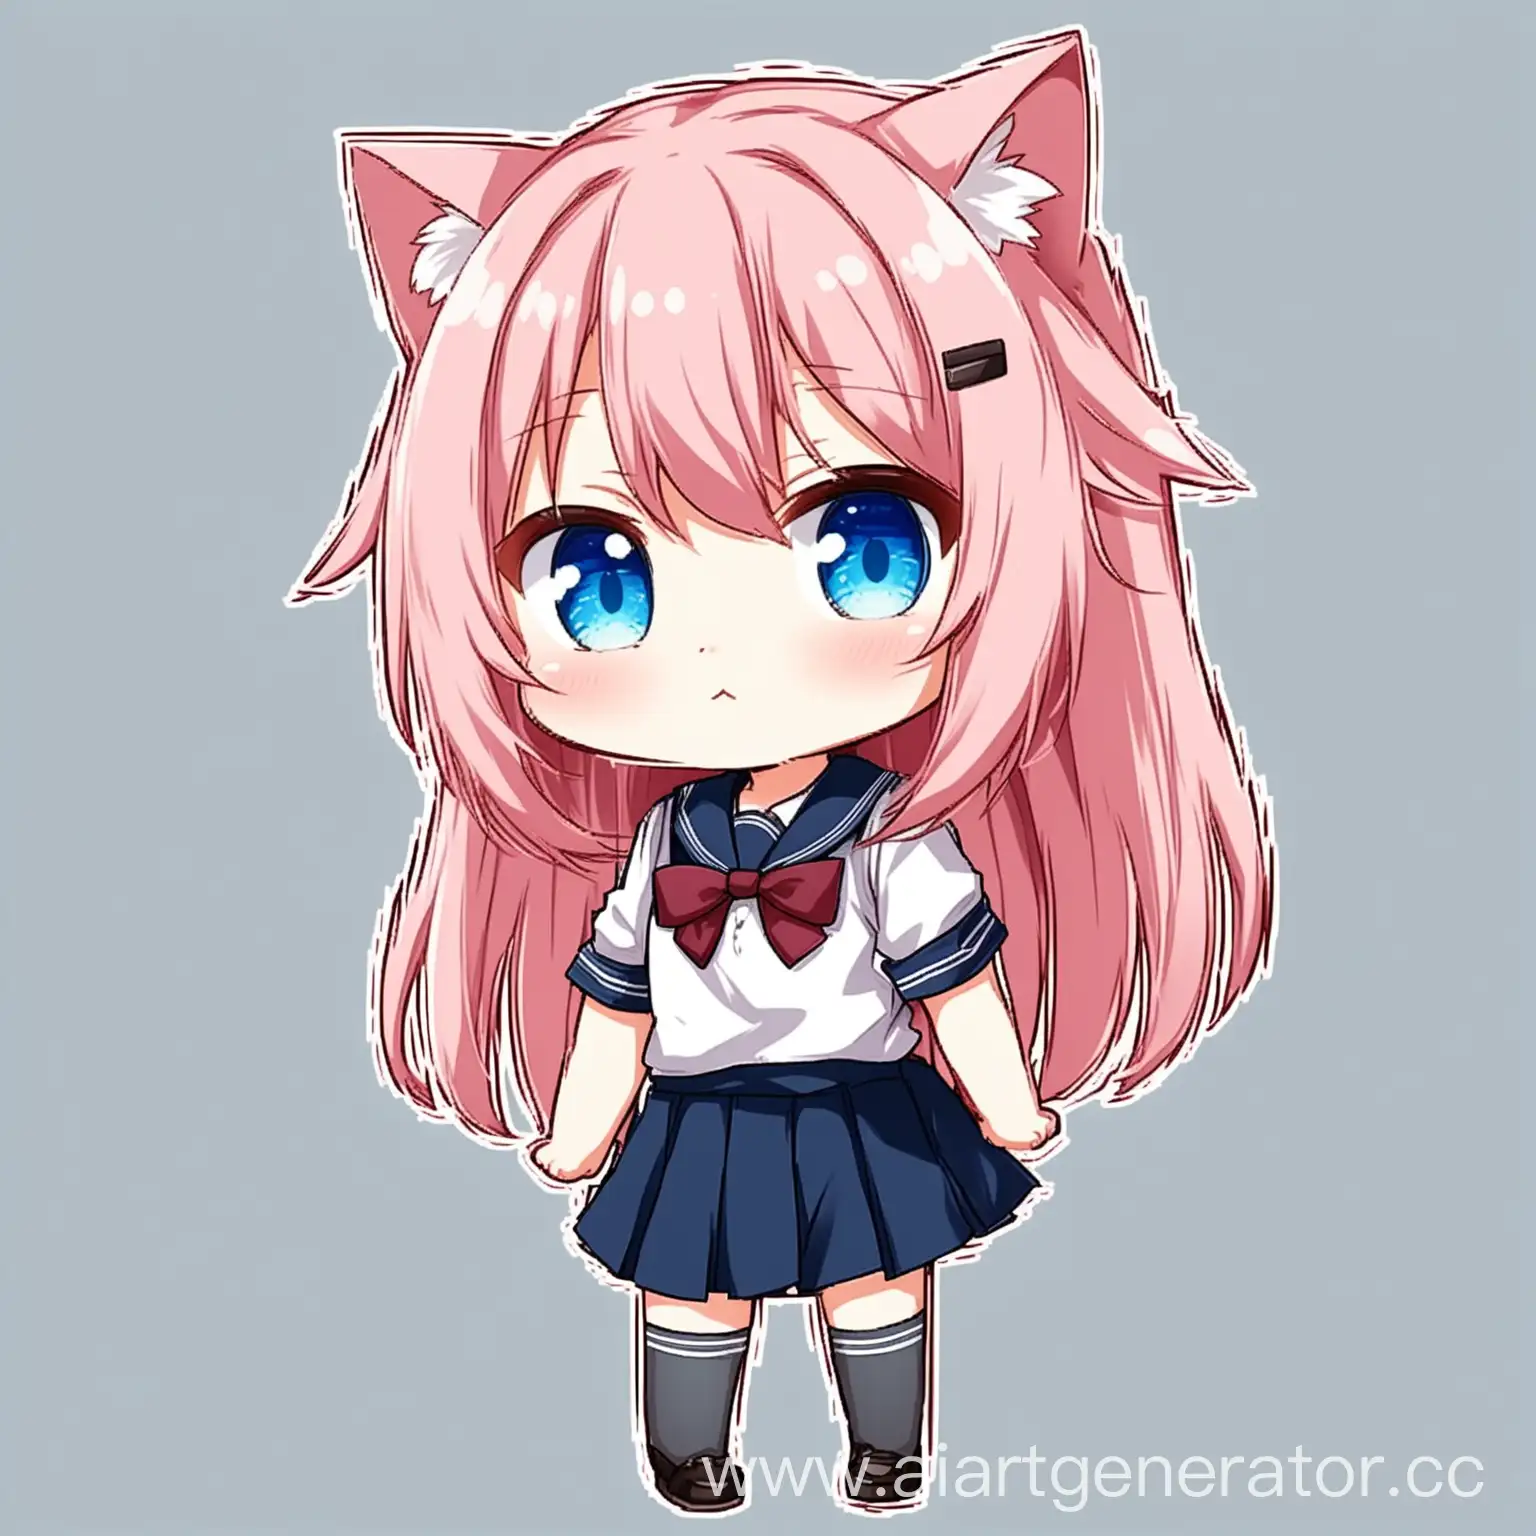 аниме кошко девочка с розовыми волосами, голубыми глазами, в школьной форме и в чиби стиле без фона